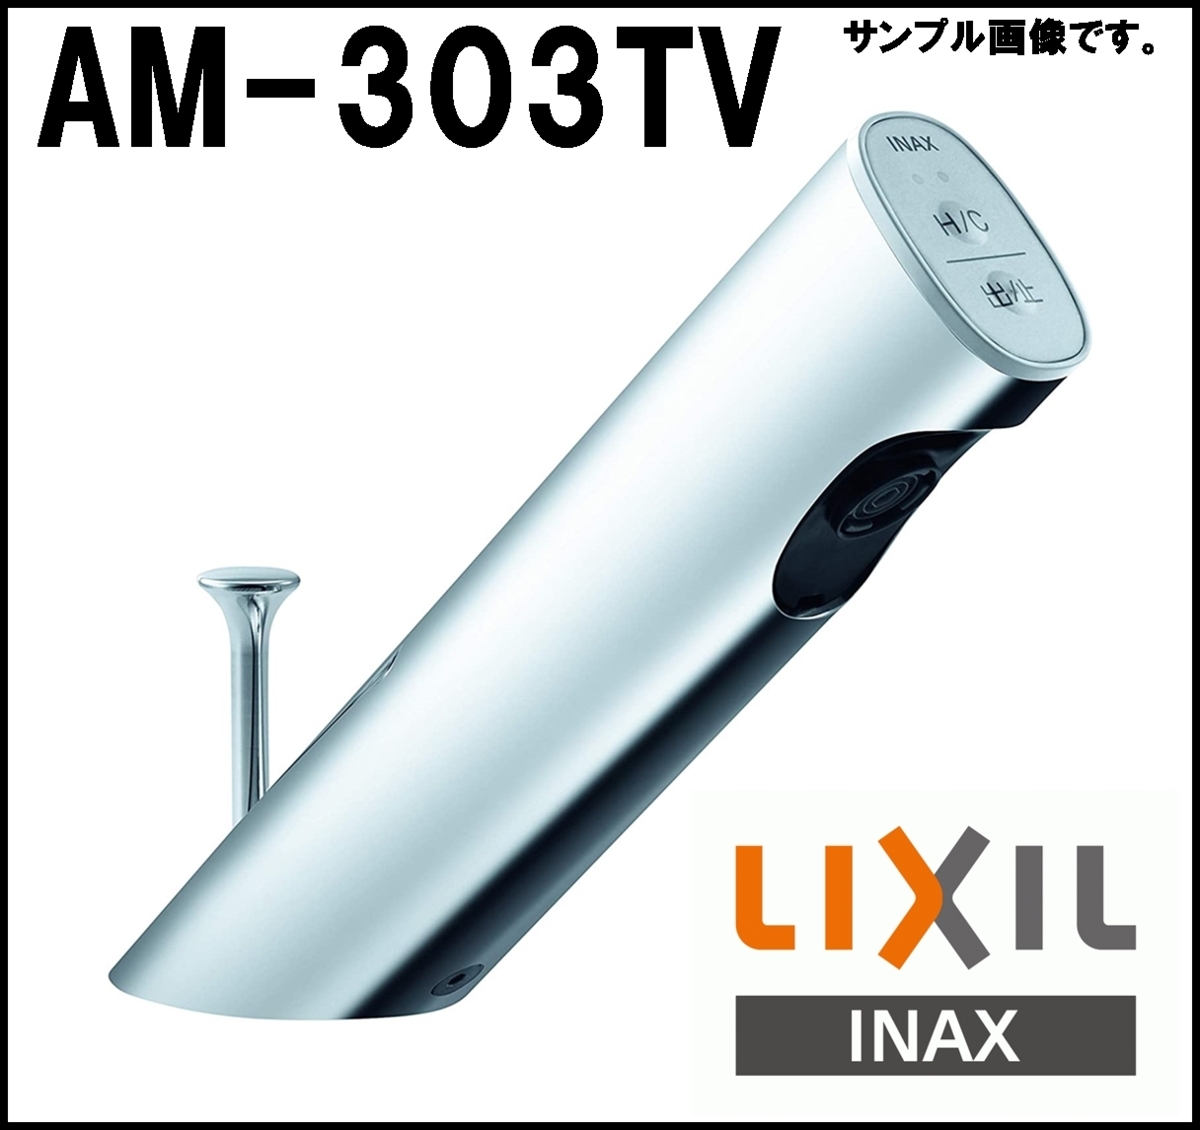 新品 標準価格121,000円 LIXIL 自動水栓 AM-303TV1 オートマージュA